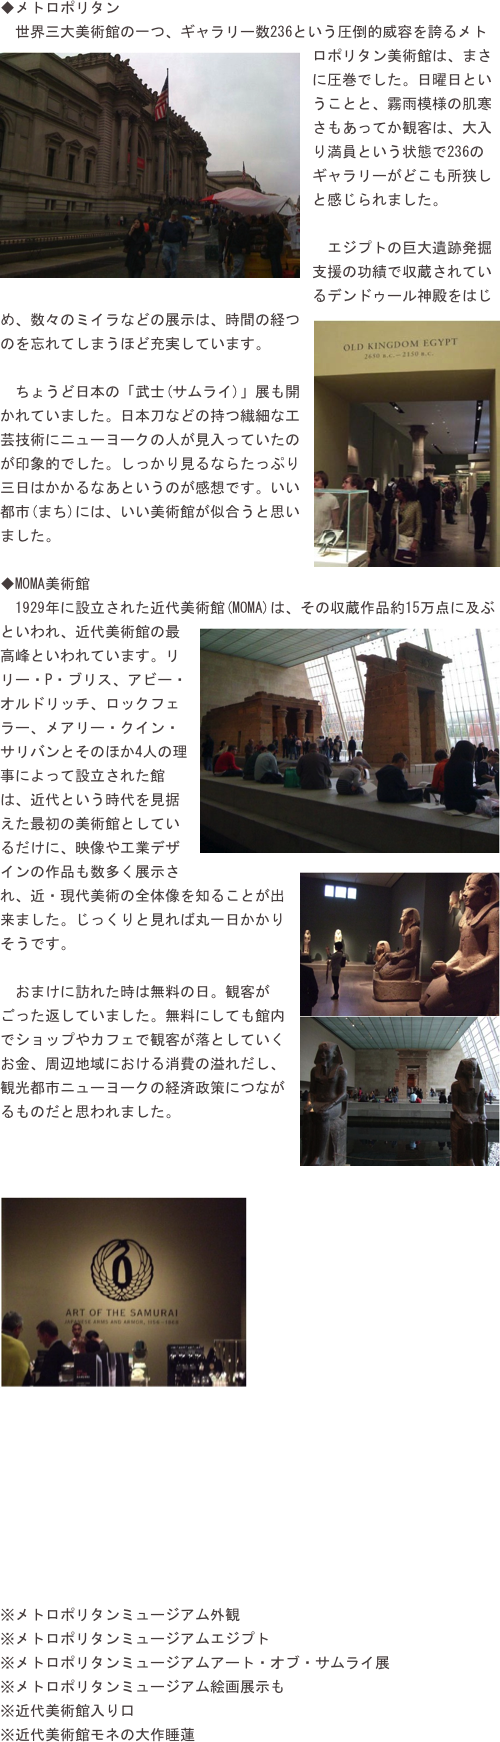 ◆メトロポリタン　世界三大美術館の一つ、ギャラリー数236という圧倒的威容を誇るメト￼ロポリタン美術館は、まさに圧巻でした。日曜日ということと、霧雨模様の肌寒さもあってか観客は、大入り満員という状態で236のギャラリーがどこも所狭しと感じられました。
　エジプトの巨大遺跡発掘支援の功績で収蔵されているデンドゥール神殿をはじめ、数々のミイラなどの展￼示は、時間の経つのを忘れてしまうほど充実しています。
　ちょうど日本の「武士(サムライ)」展も開かれていました。日本刀などの持つ繊細な工芸技術にニューヨークの人が見入っていたのが印象的でした。しっかり見るならたっぷり三日はかかるなあというのが感想です。いい都市(まち)には、いい美術館が似合うと思いました。
◆MOMA美術館
　1929年に設立された近代美術館￼(MOMA)は、その収蔵作品約15万点に及ぶといわれ、近代美術館の最高峰といわれています。リリー・P・ブリス、アビー・オルドリッチ、ロックフェラー、メアリー・クイン・サリバンとそのほか4人の理事によって設立された館は、近代という時代を見据えた最初の美術館としているだけに、映像や工業デザインの作品も数多く展示さ￼れ、近・現代美術の全体像を知ることが出来ました。じっくりと見れば丸一日かかりそうです。
　おまけに訪れた時は無料の日。観客がごった返していました。無料にしても館内￼でショップやカフェで観客が落としていくお金、周辺地域における消費の溢れだし、観光都市ニューヨークの経済政策につながるものだと思われました。


￼








※メトロポリタンミュージアム外観※メトロポリタンミュージアムエジプト※メトロポリタンミュージアムアート・オブ・サムライ展※メトロポリタンミュージアム絵画展示も※近代美術館入り口※近代美術館モネの大作睡蓮